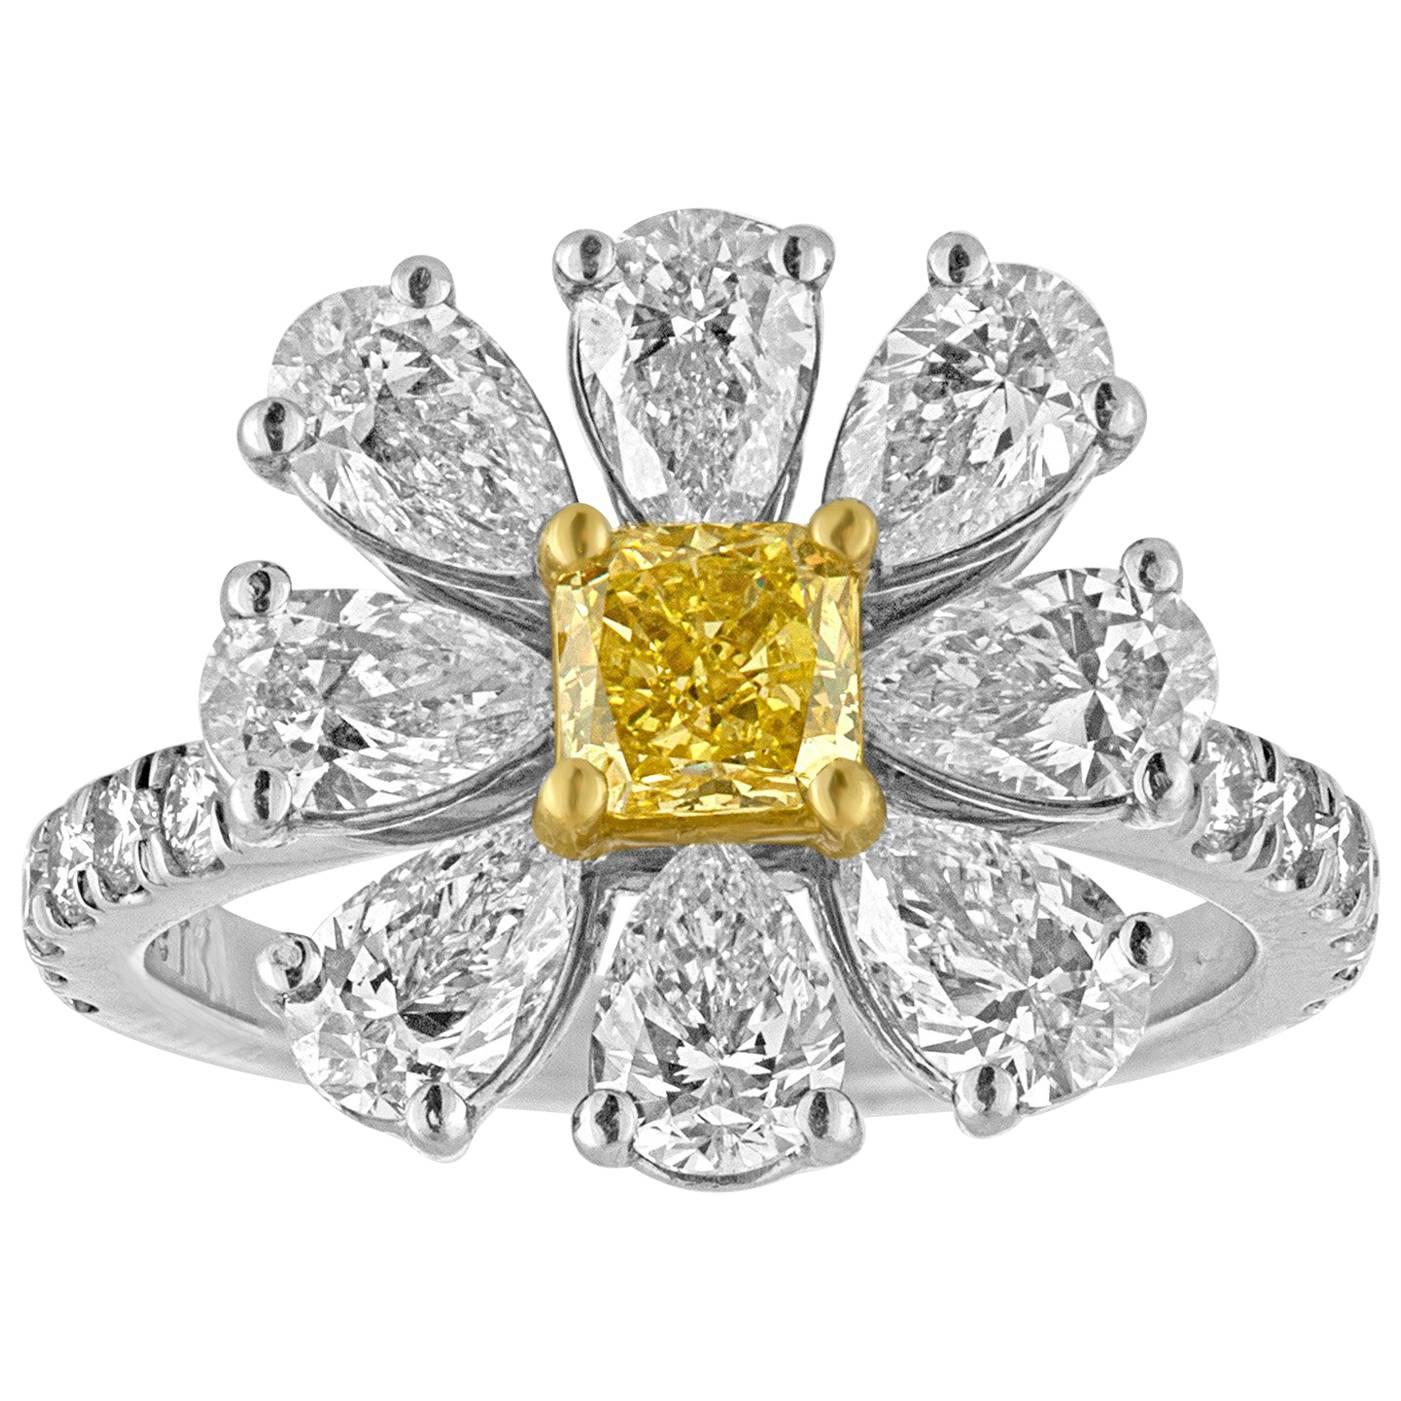 Bague fleur de marguerite fantaisie en platine avec diamants jaunes et blancs intenses de 3,11 carats